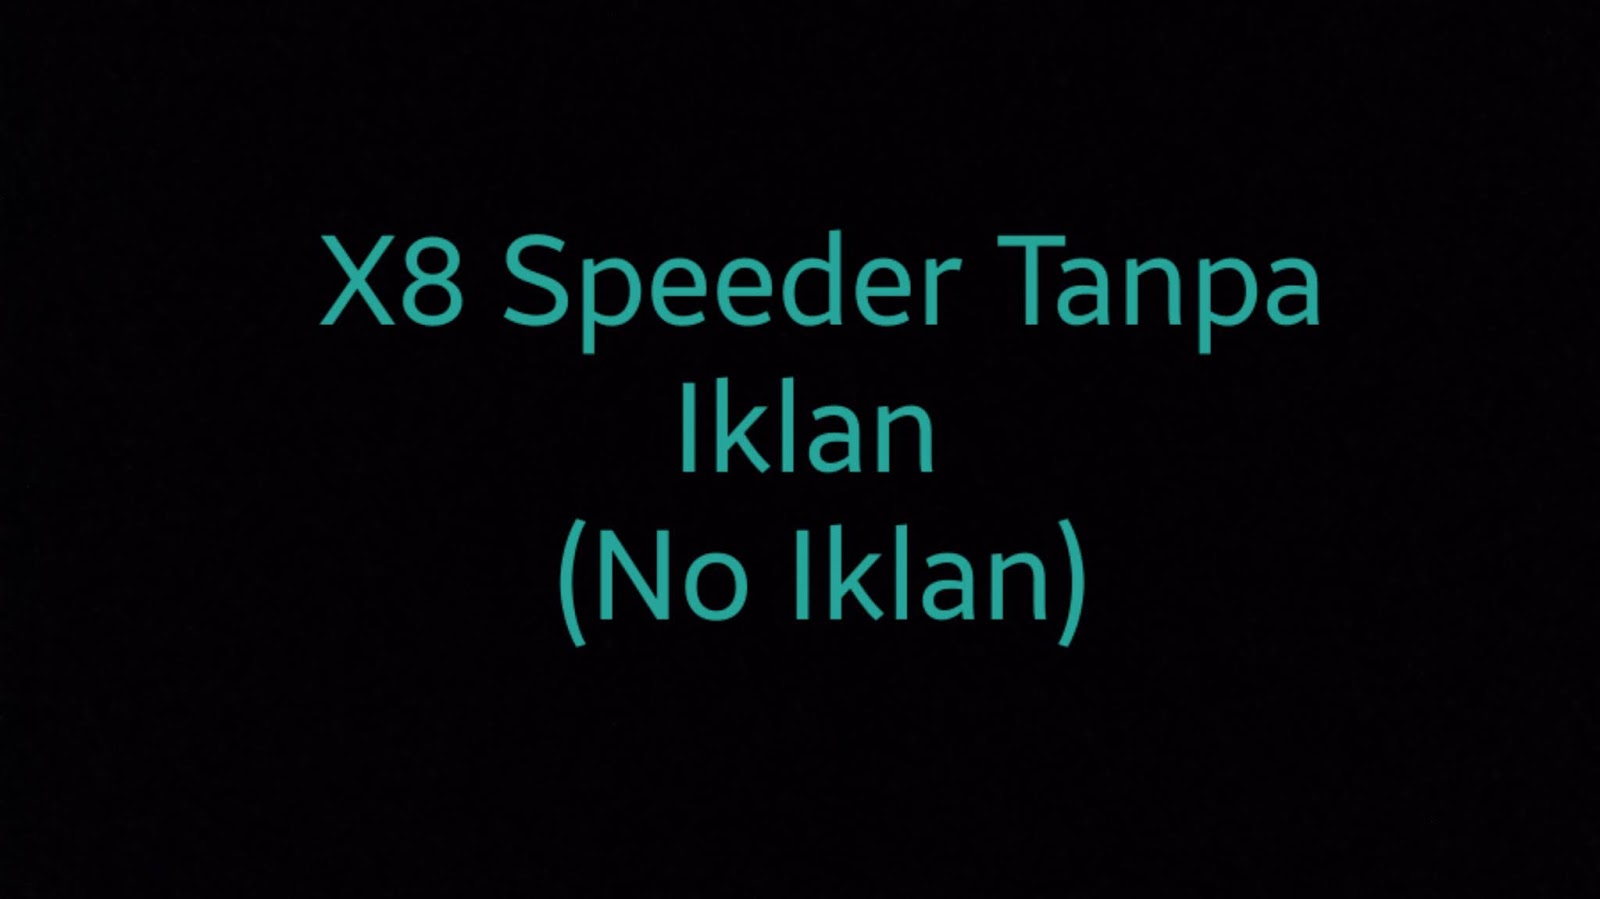 X8 Speeder Tanpa Iklan (no Iklan)